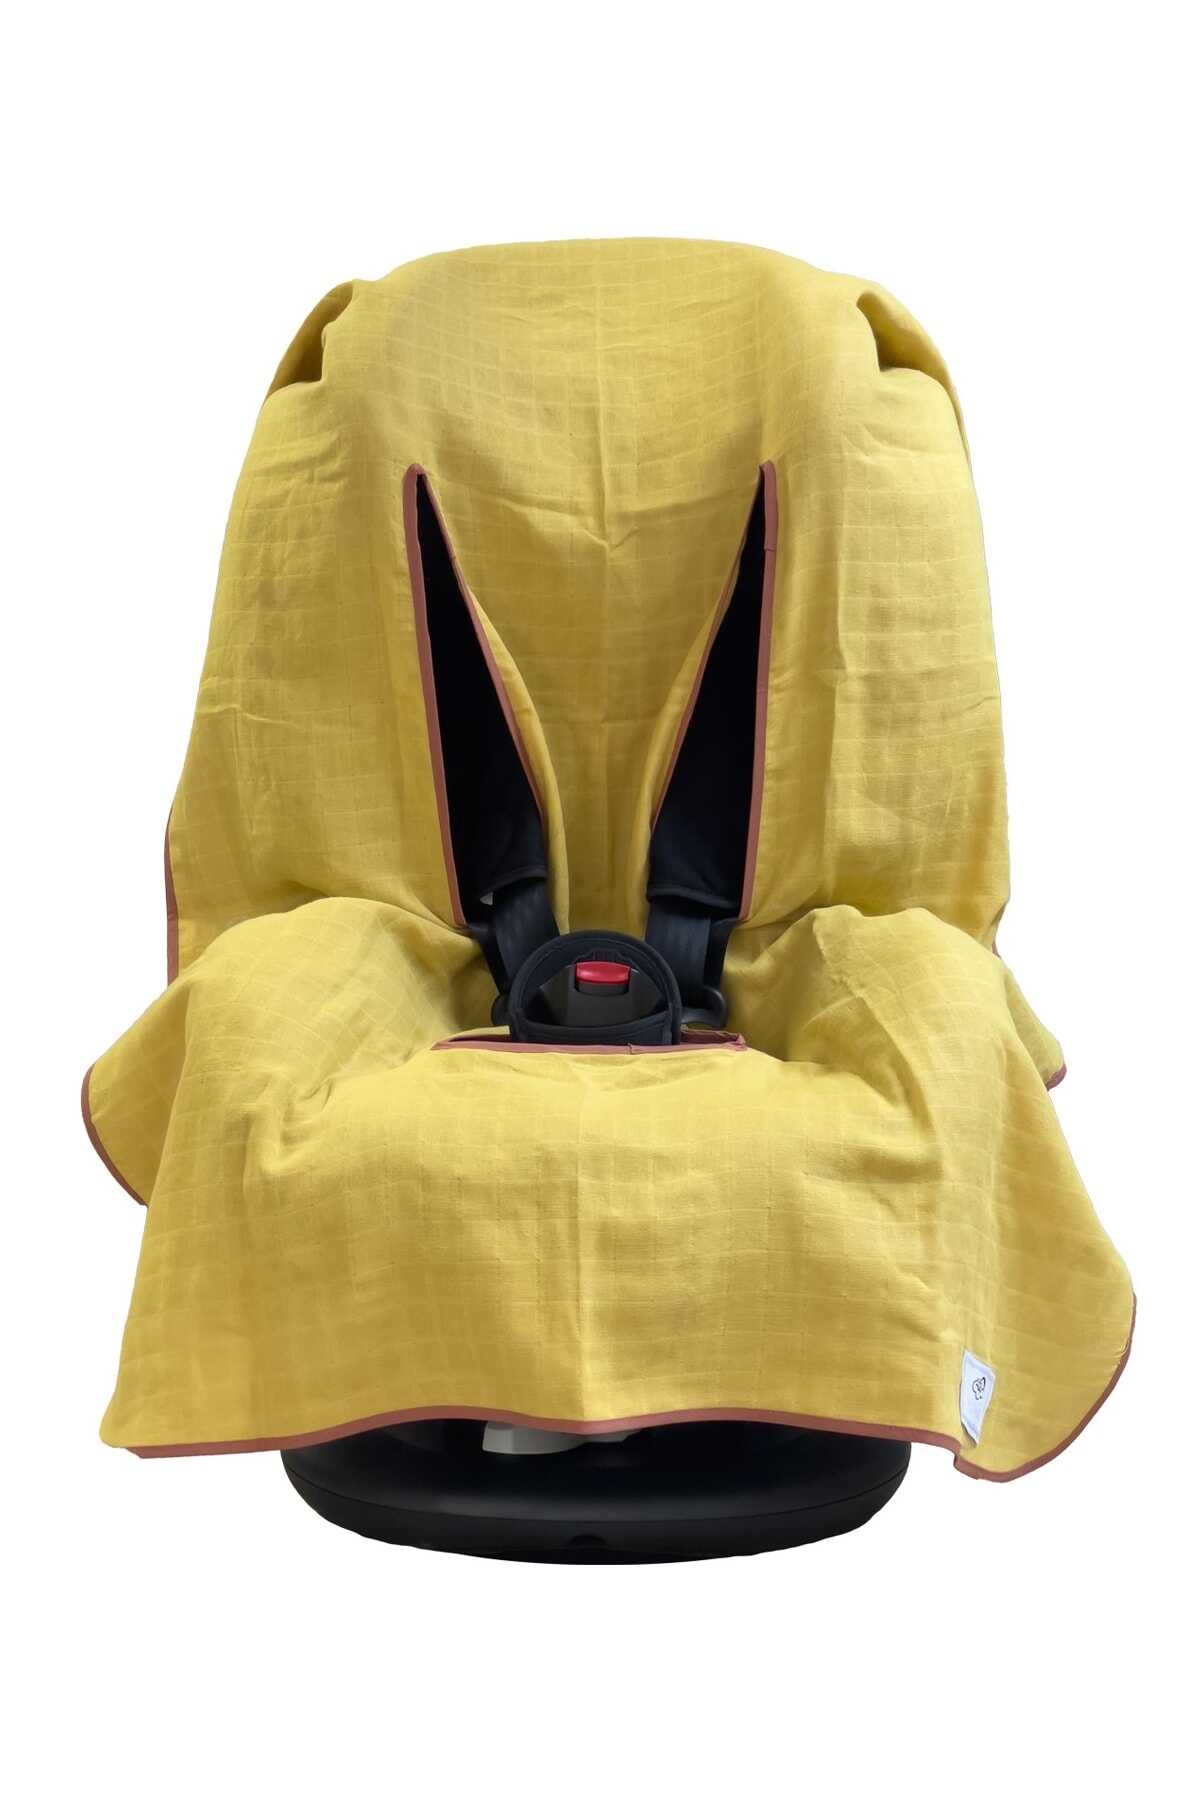 روکش صندلی ماشین کودک همراه کیف پارچه ای کوچک زرد برند Ezh